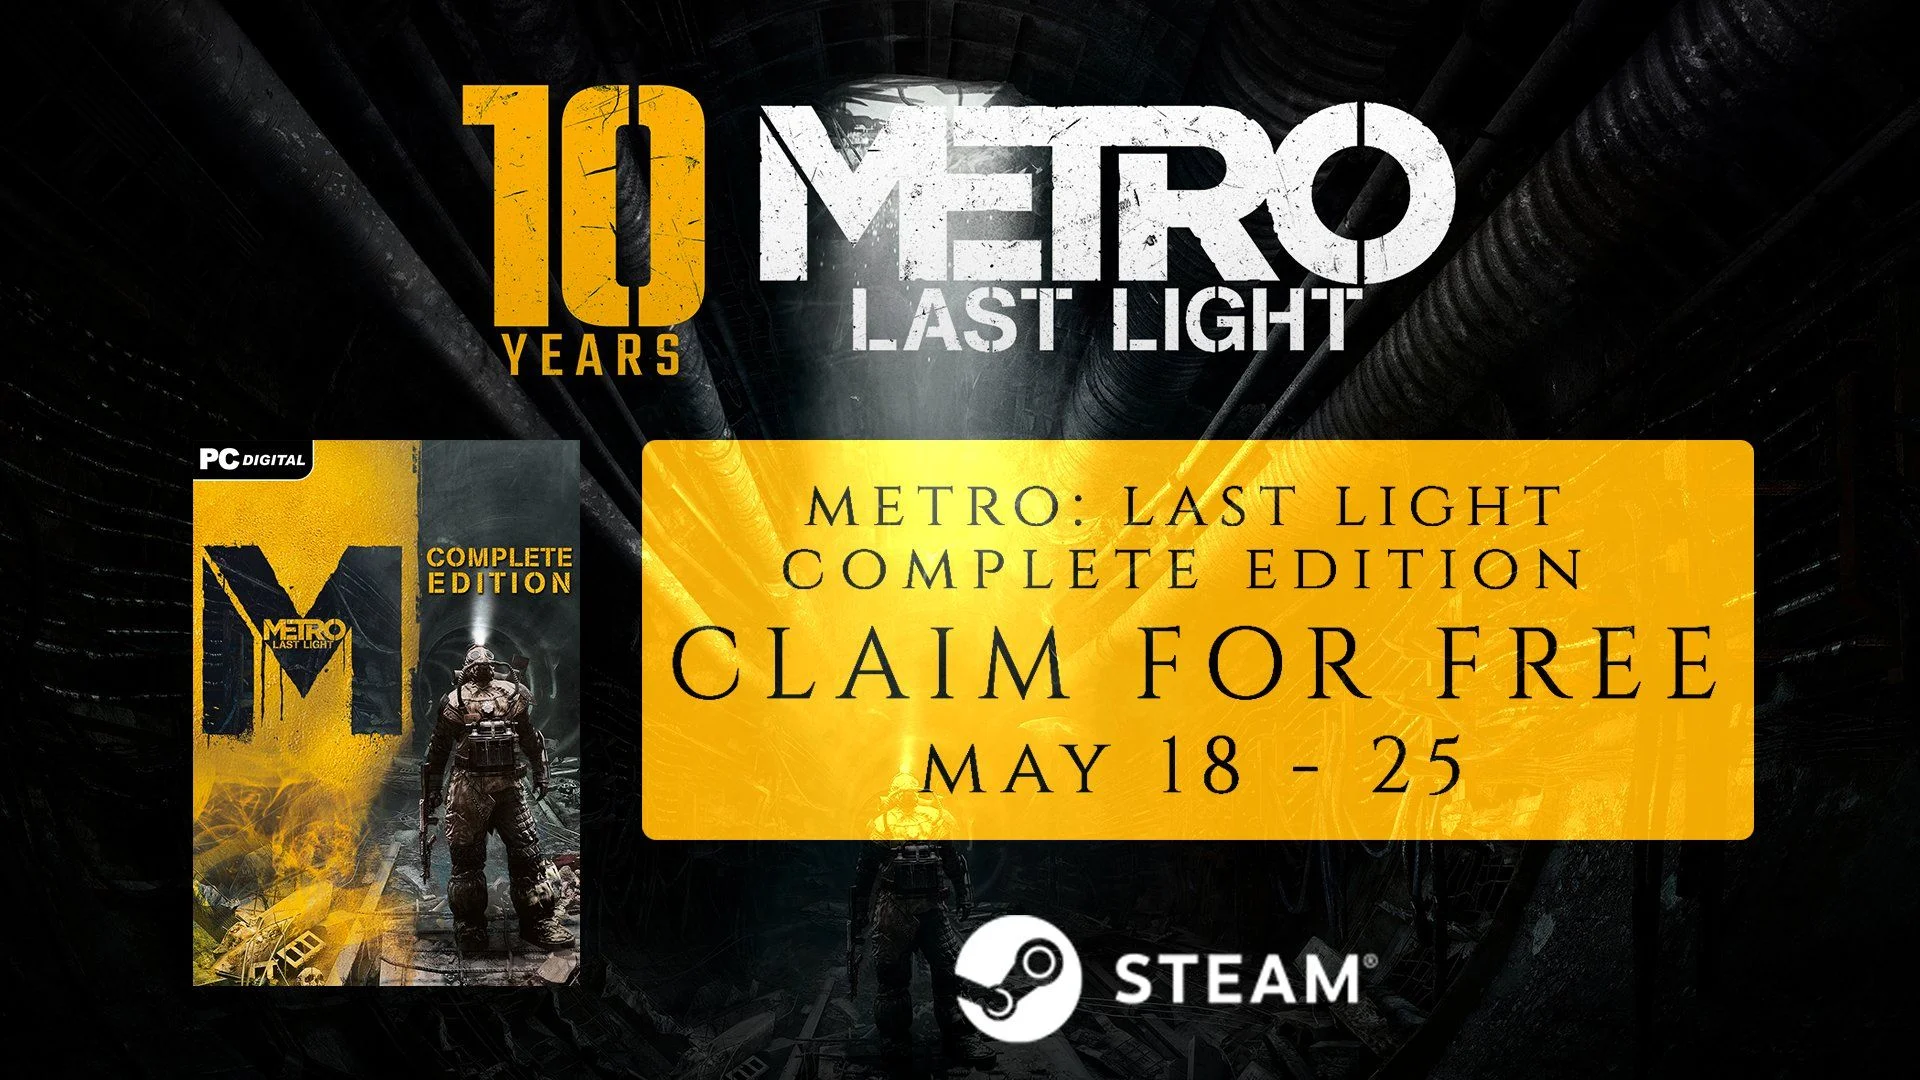 Полное издание Metro Last Light раздадут в Steam с 18 по 25 мая - фото 1